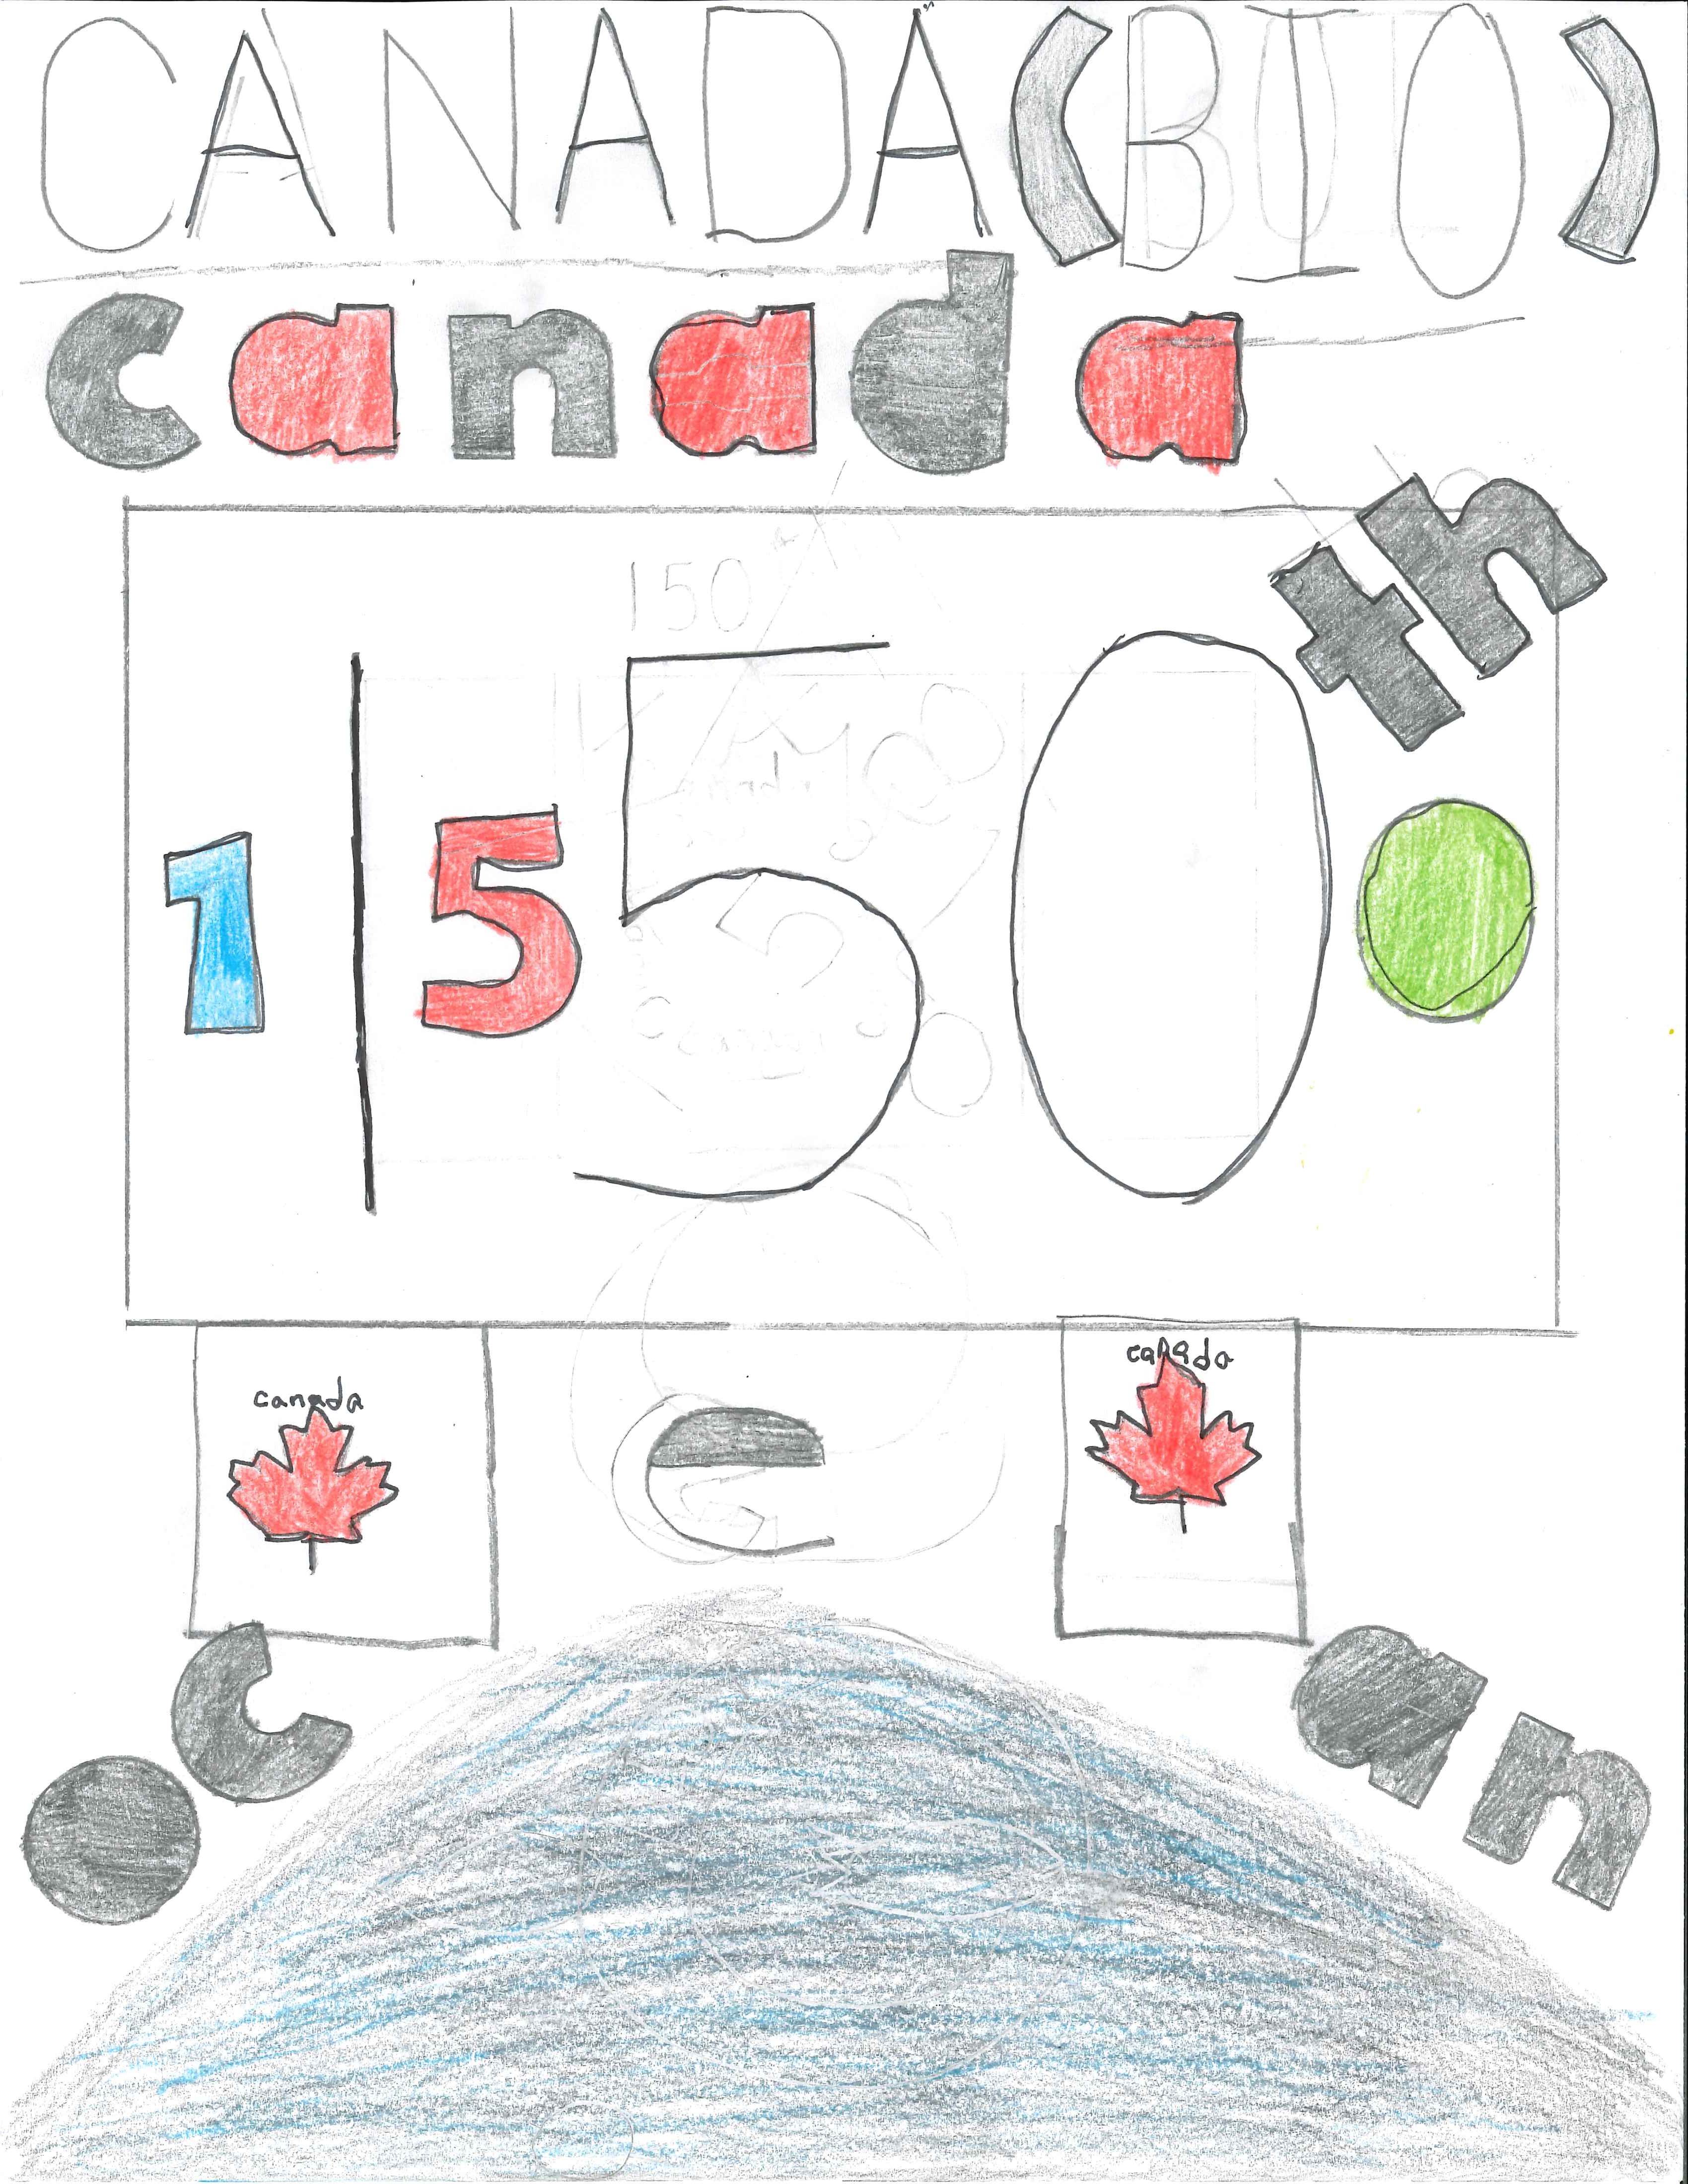 Connor A. 6e année. "Océan – Canada 150"